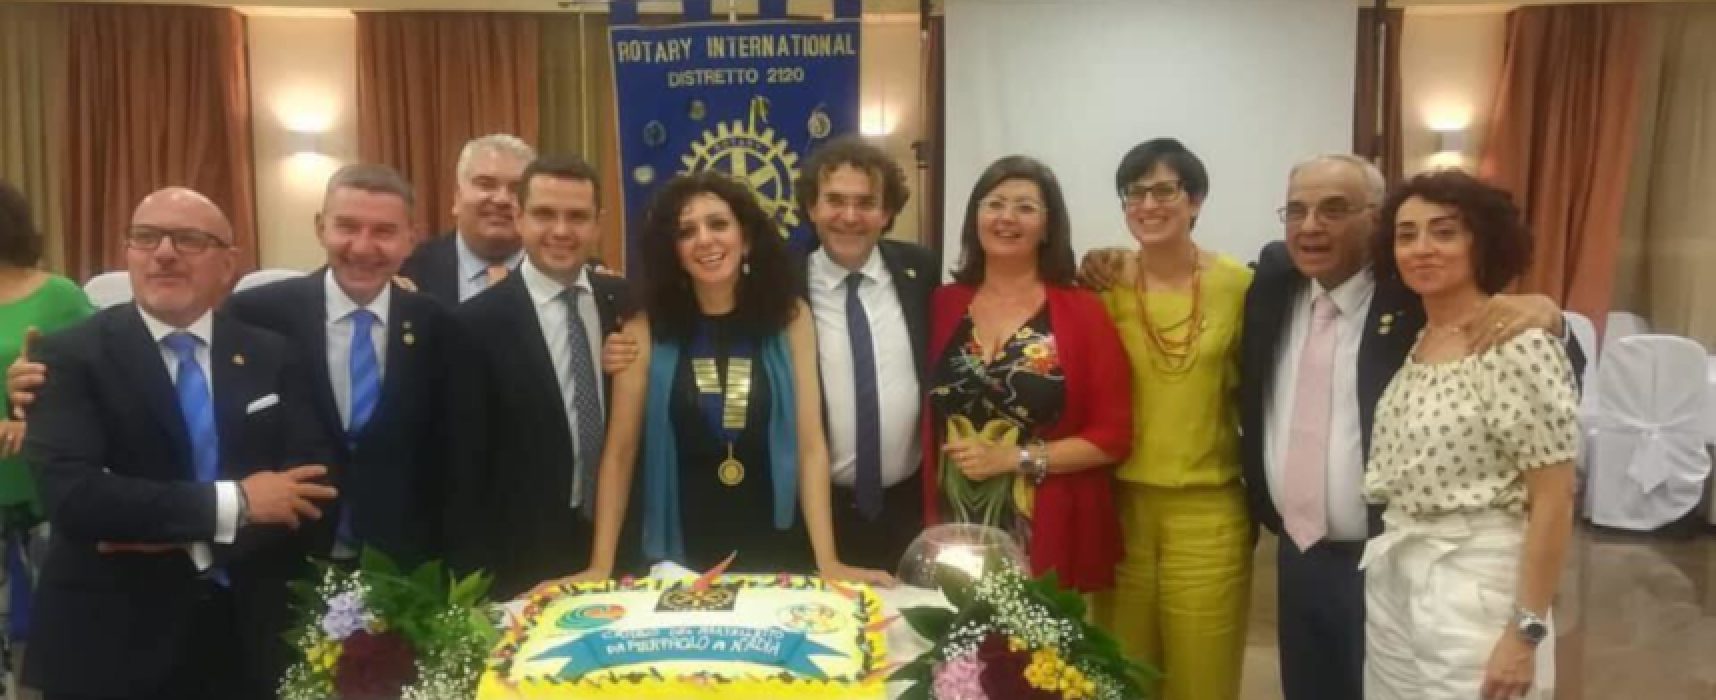 “Club dovrà spronare la comunità locale”, intervista a Nadia di Liddo, neo presidente Rotary